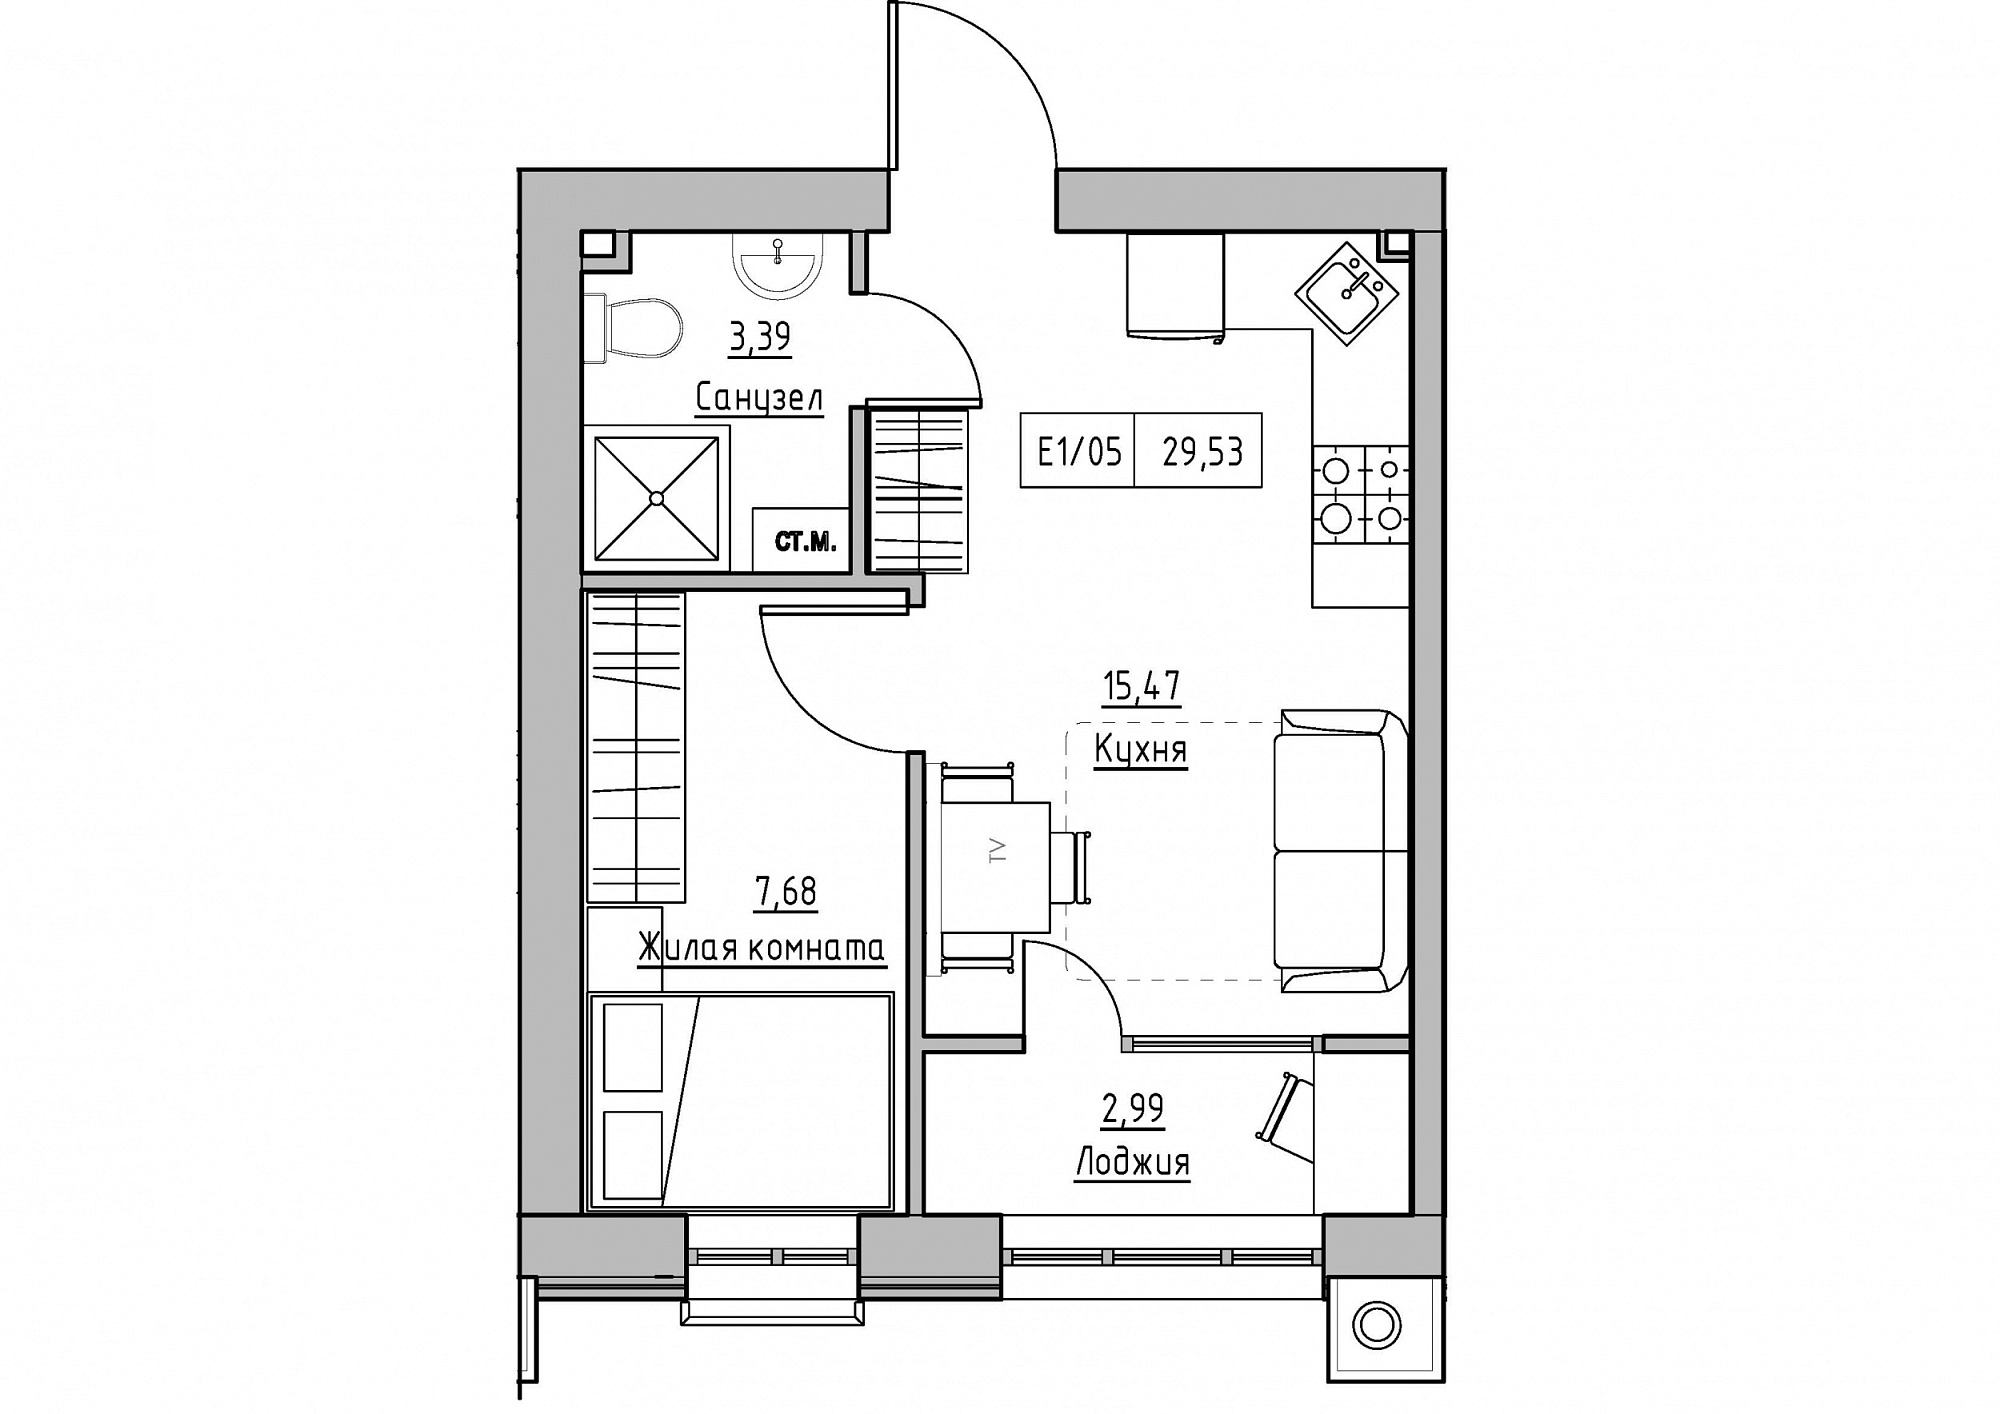 Планировка 1-к квартира площей 29.53м2, KS-011-04/0010.